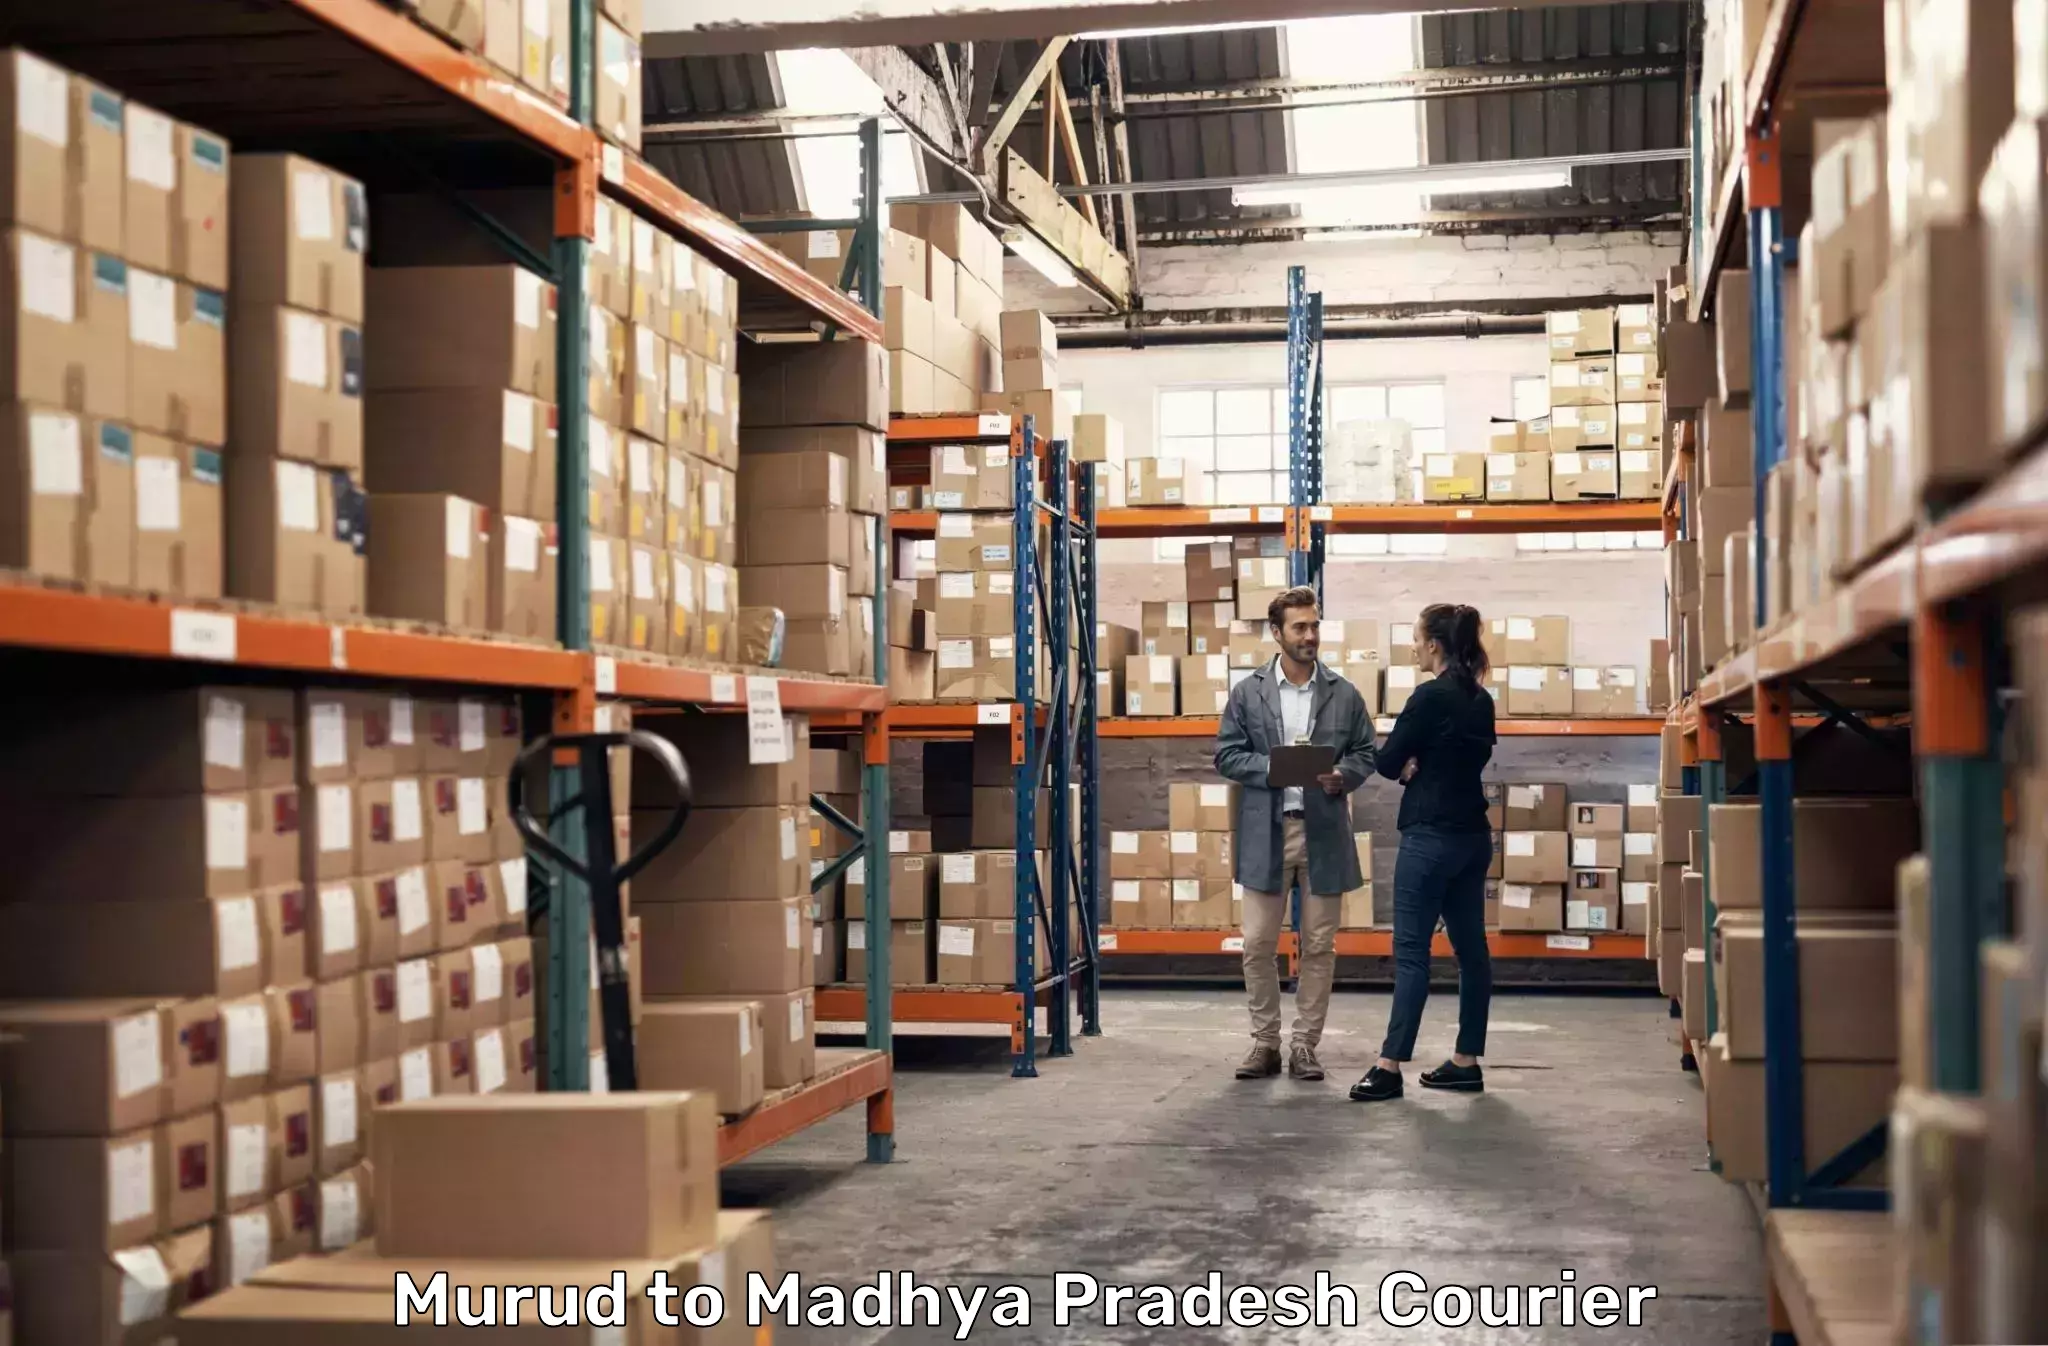 Seamless shipping experience Murud to Dindori